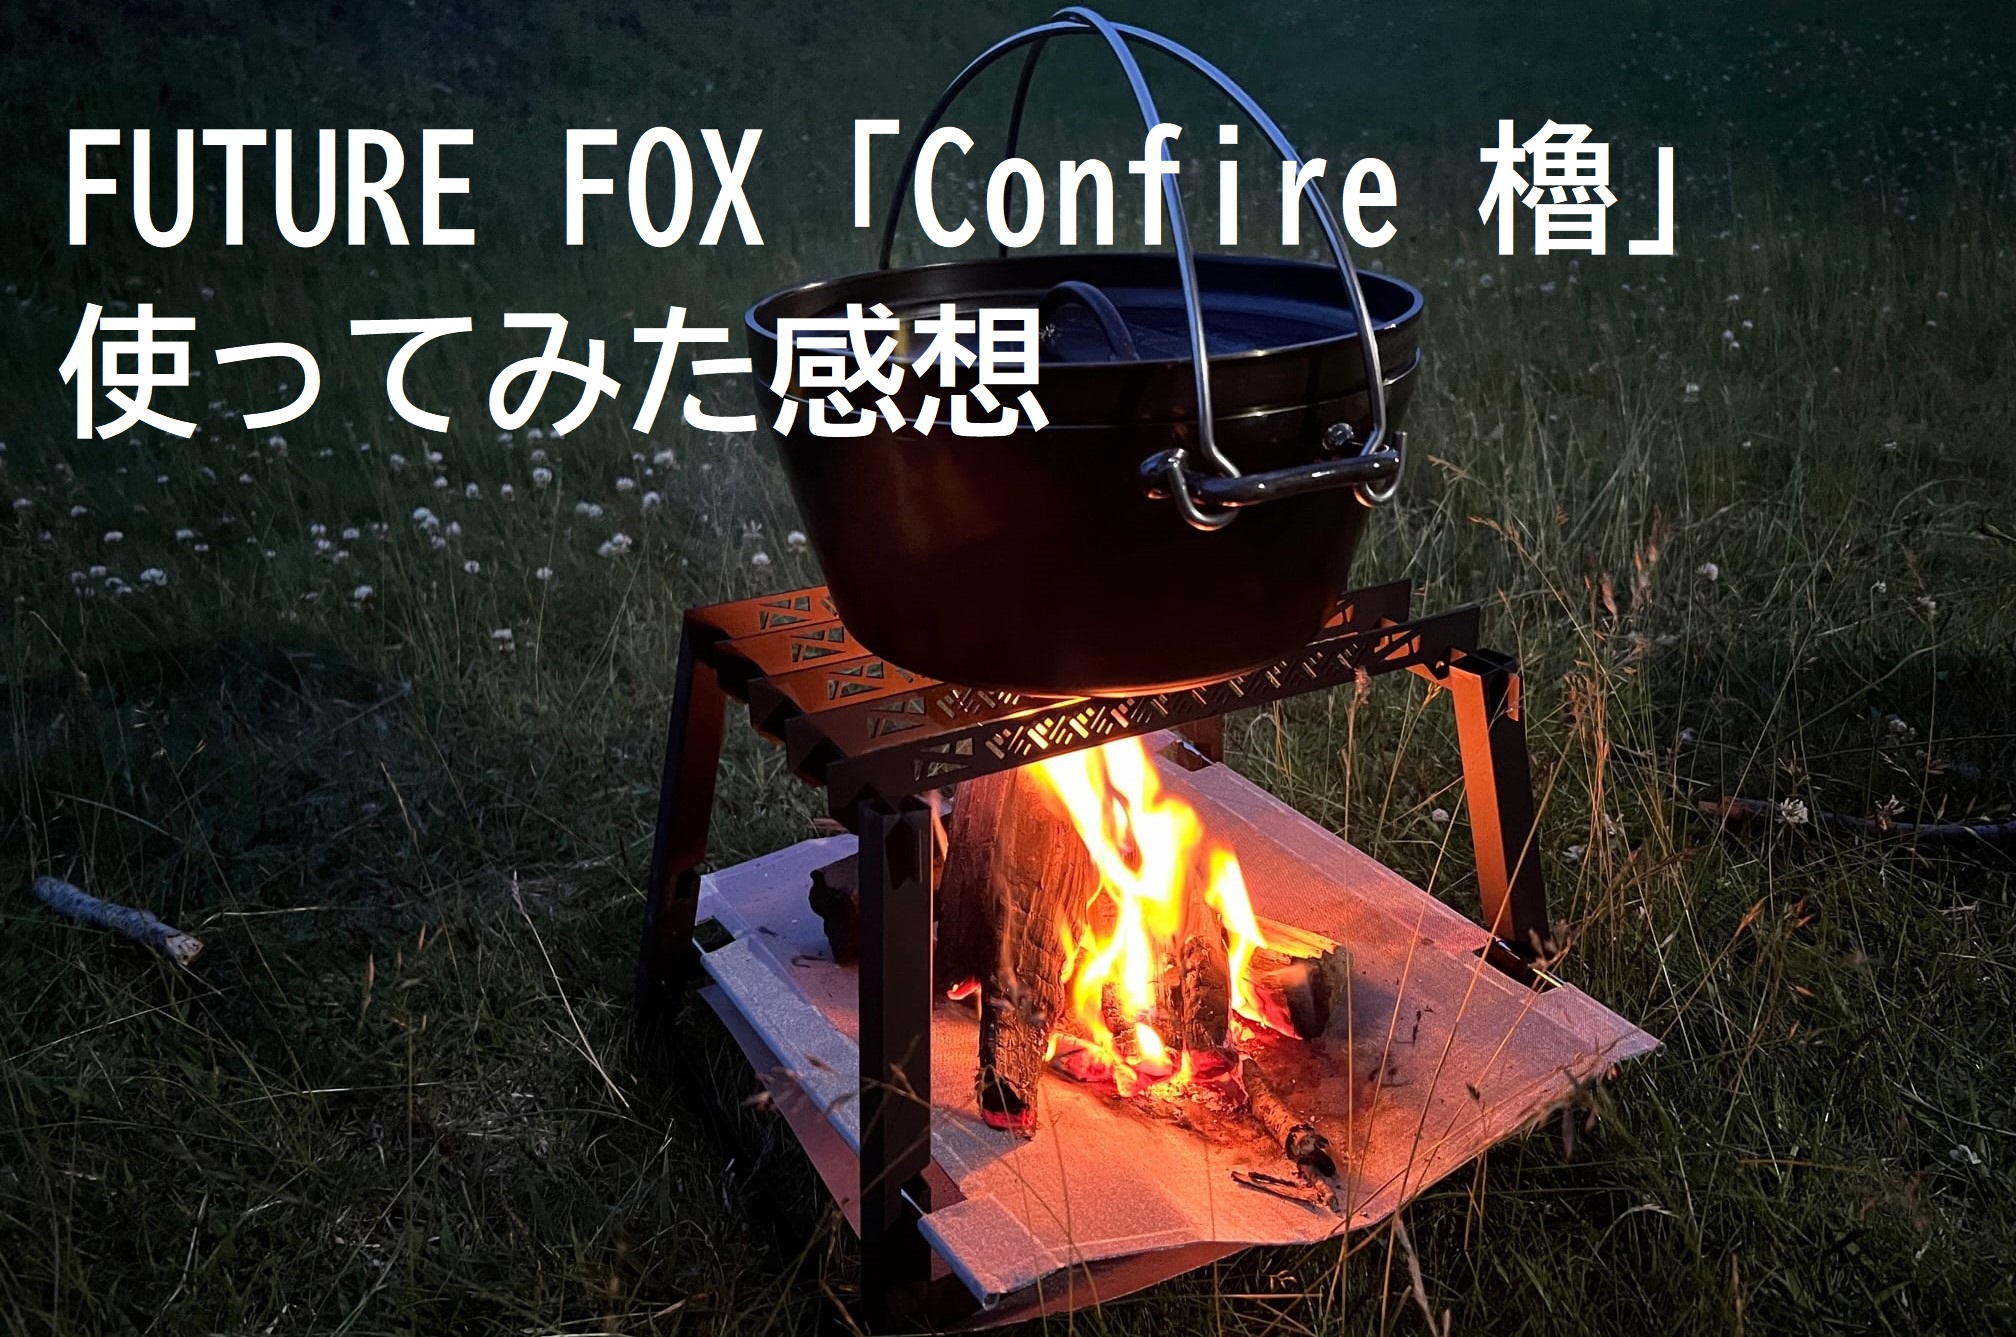 FUTURE FOX「Confire 櫓」を使ってみた感想 無骨カッコいいに尽きる 